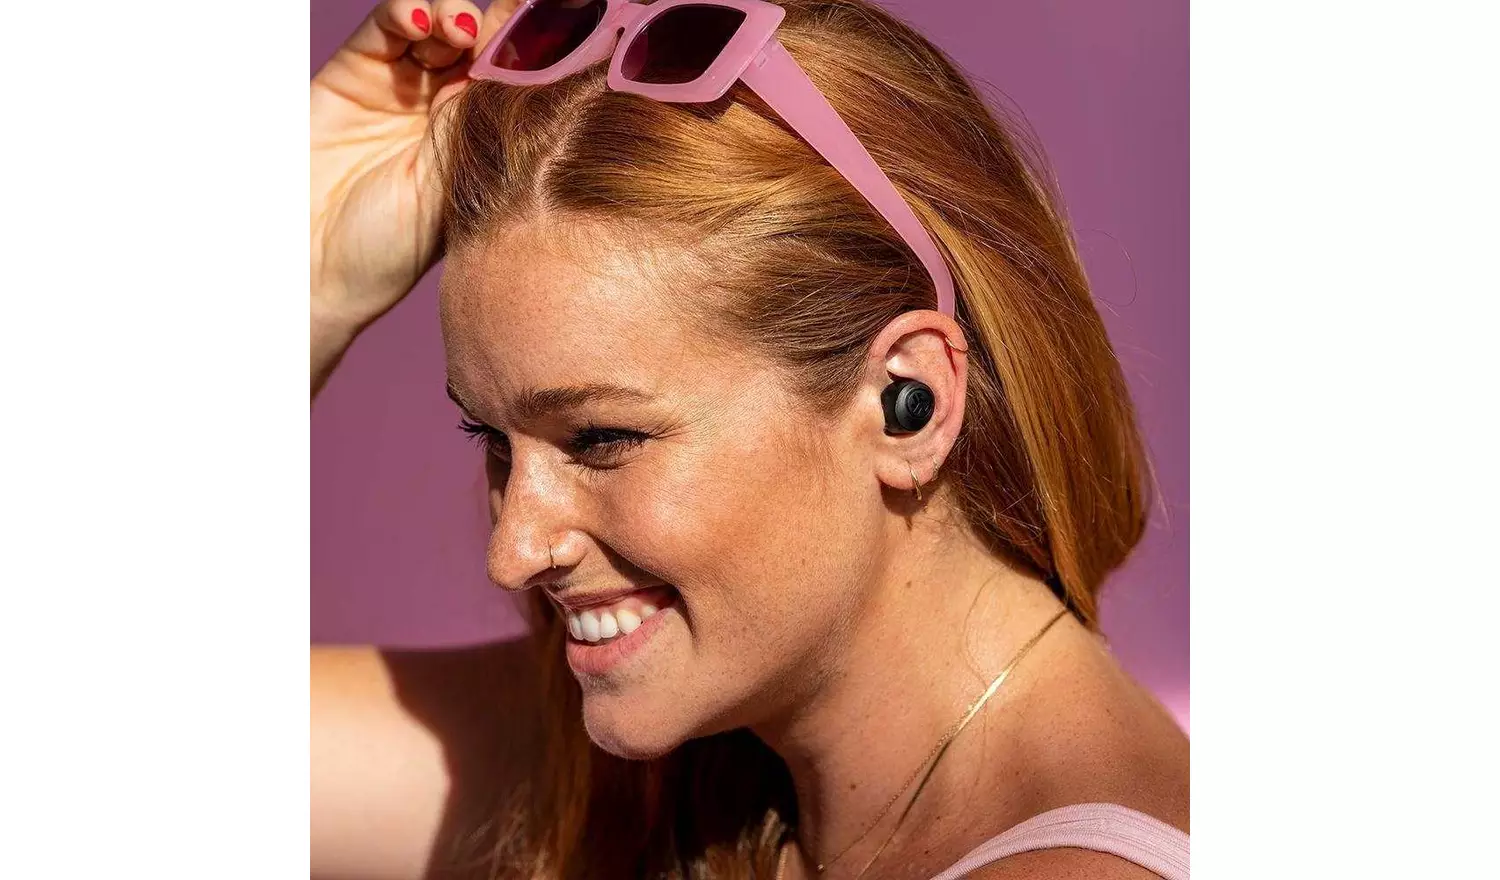 JLab GO Air Pop In-Ear True Wireless Earbuds - Black